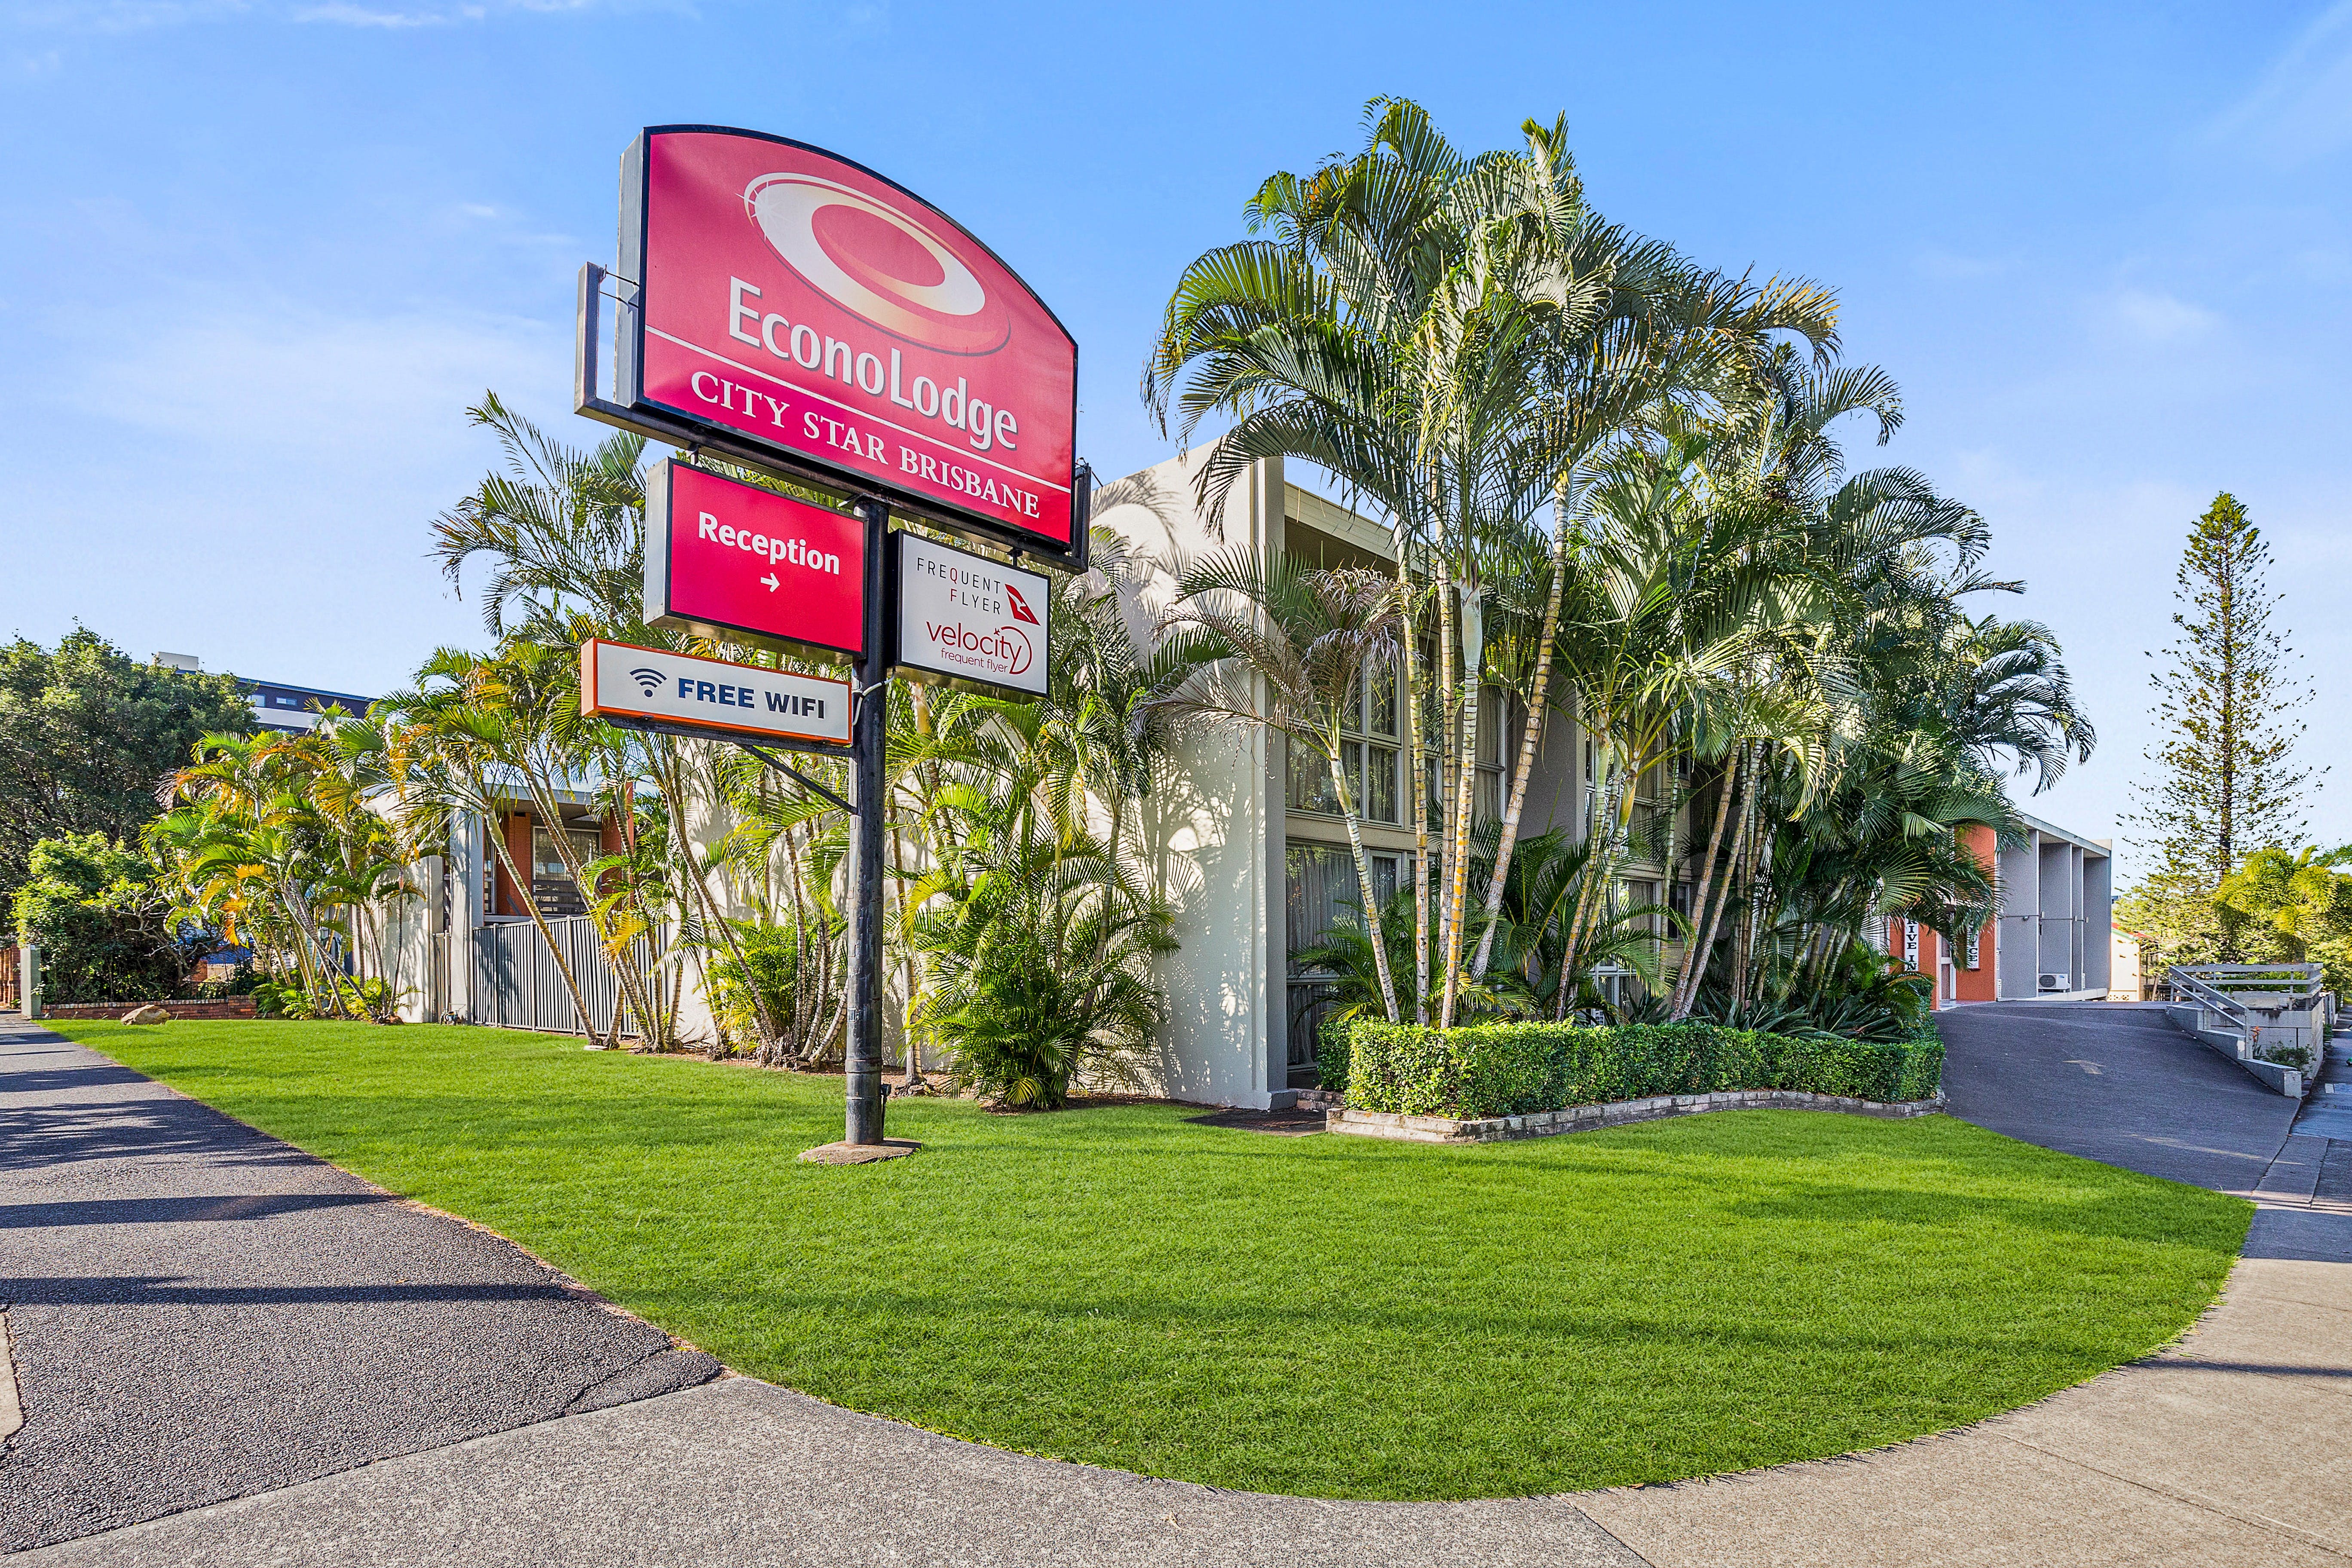 Econo Lodge City Star Brisbane - Kempsey Accommodation